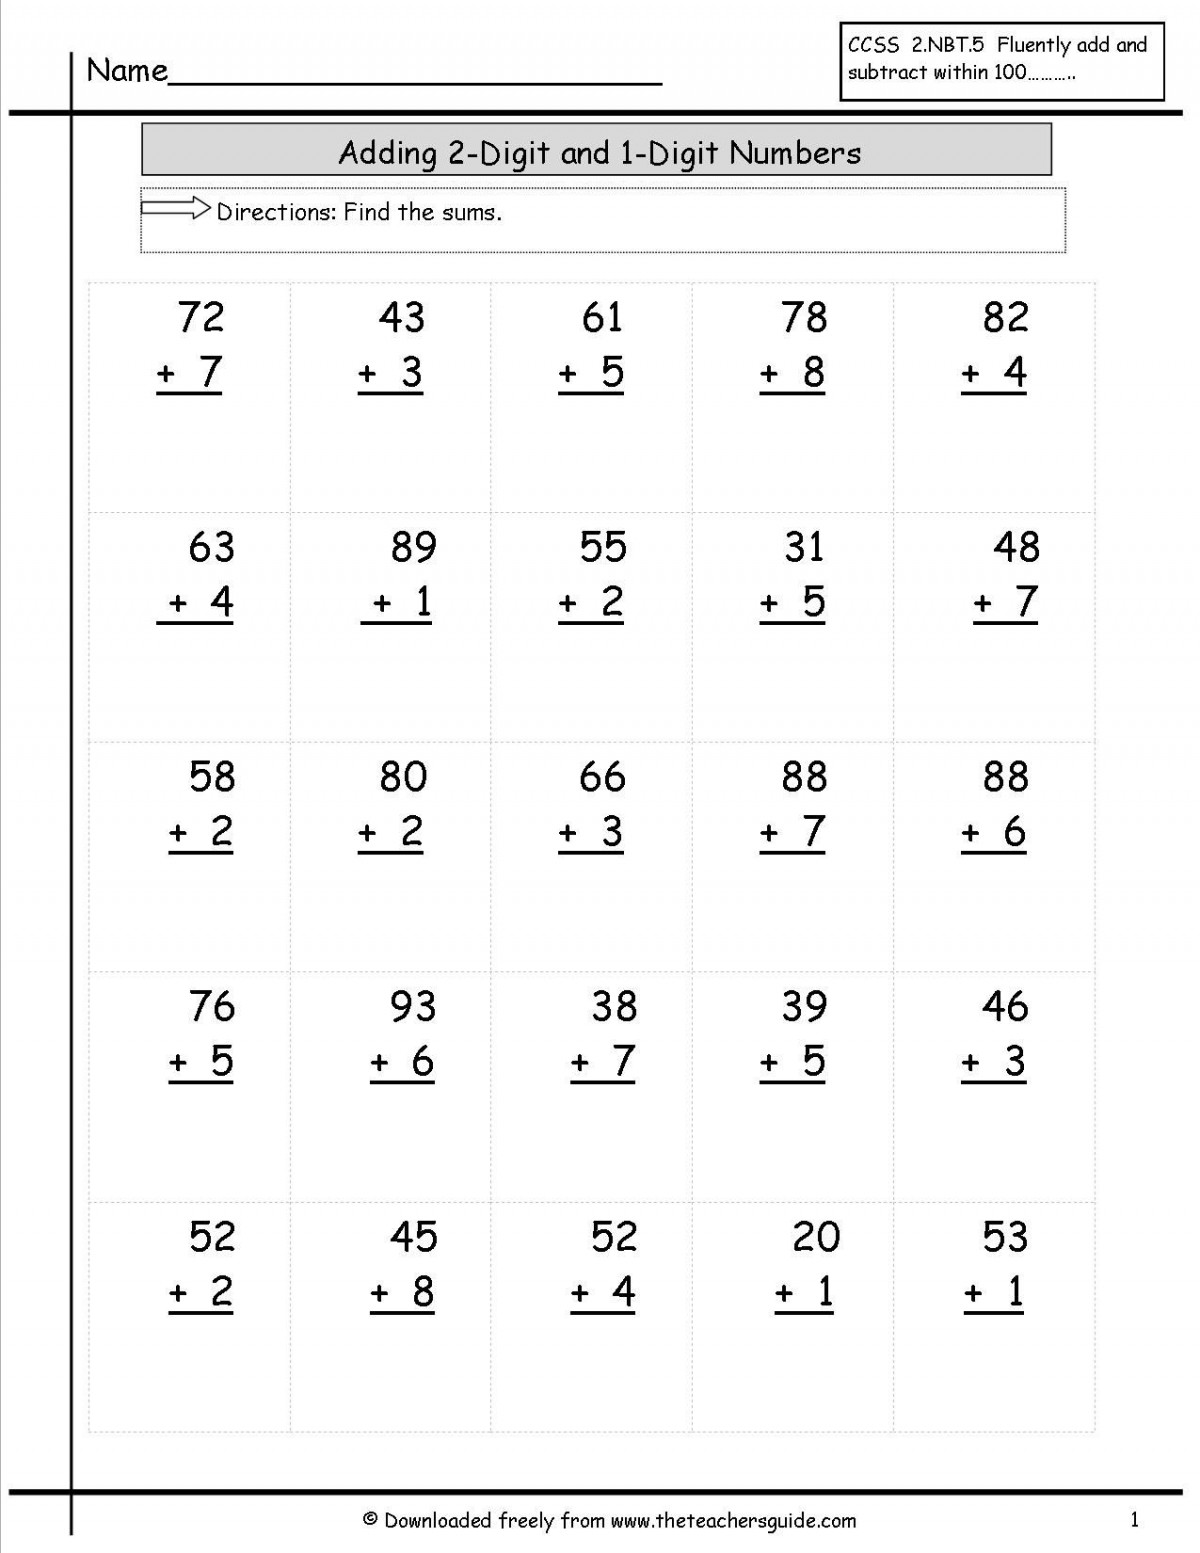 addition-of-2-digit-numbers-worksheet-teachcreativa